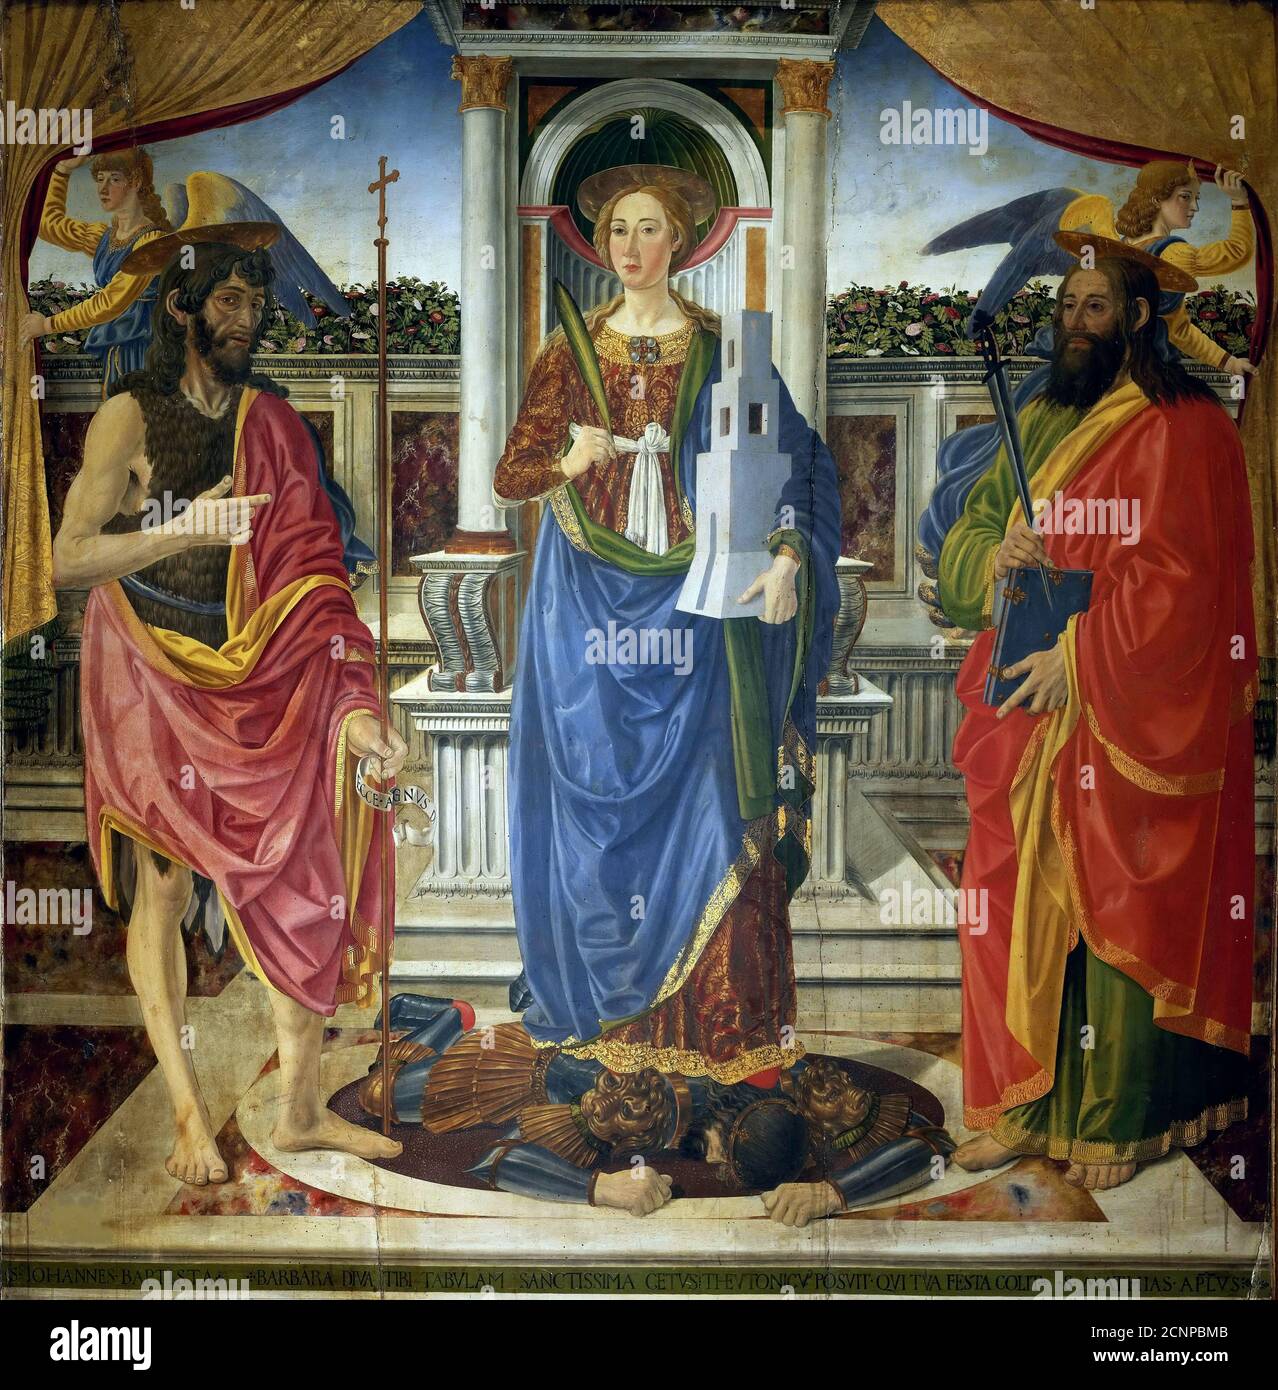 Sainte Barbara avec les saints Jean-Baptiste et Matthieu, vers 1470. Dans la collection de la Galleria dell'Accademia, Florence. Banque D'Images